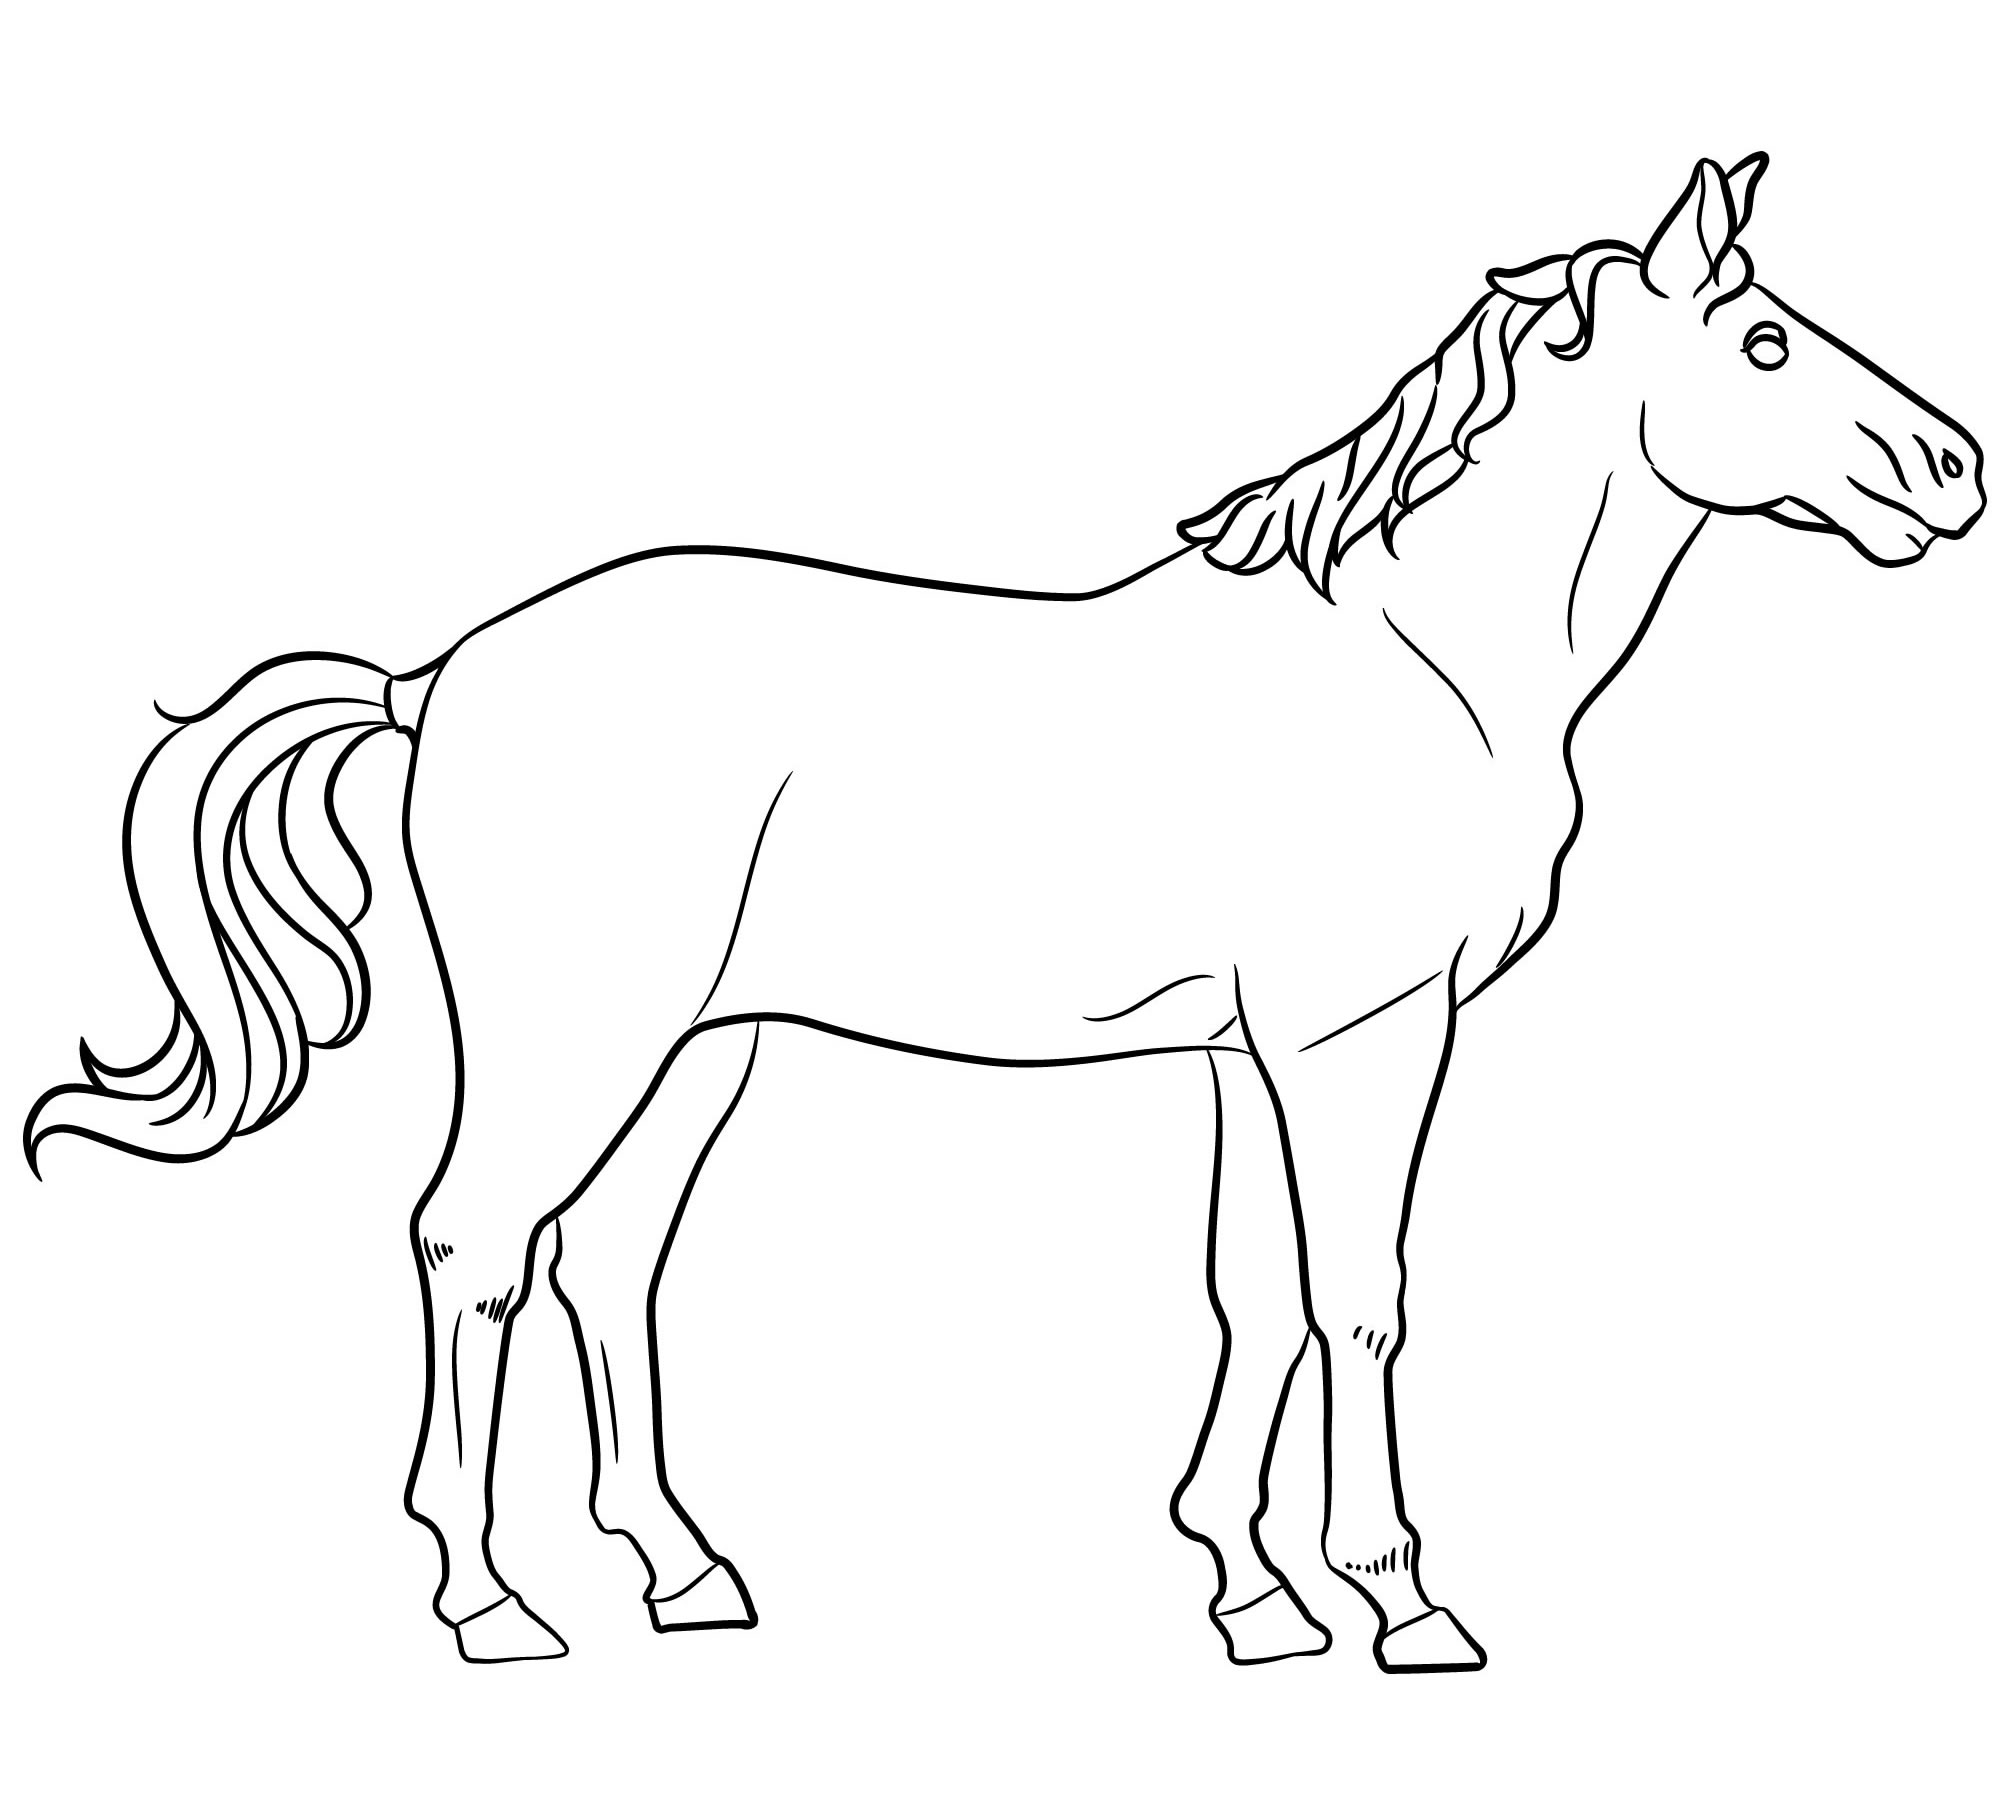 Книжка-раскраска с лошадьми. Живопись и рисунок лошадей и пони раскраски